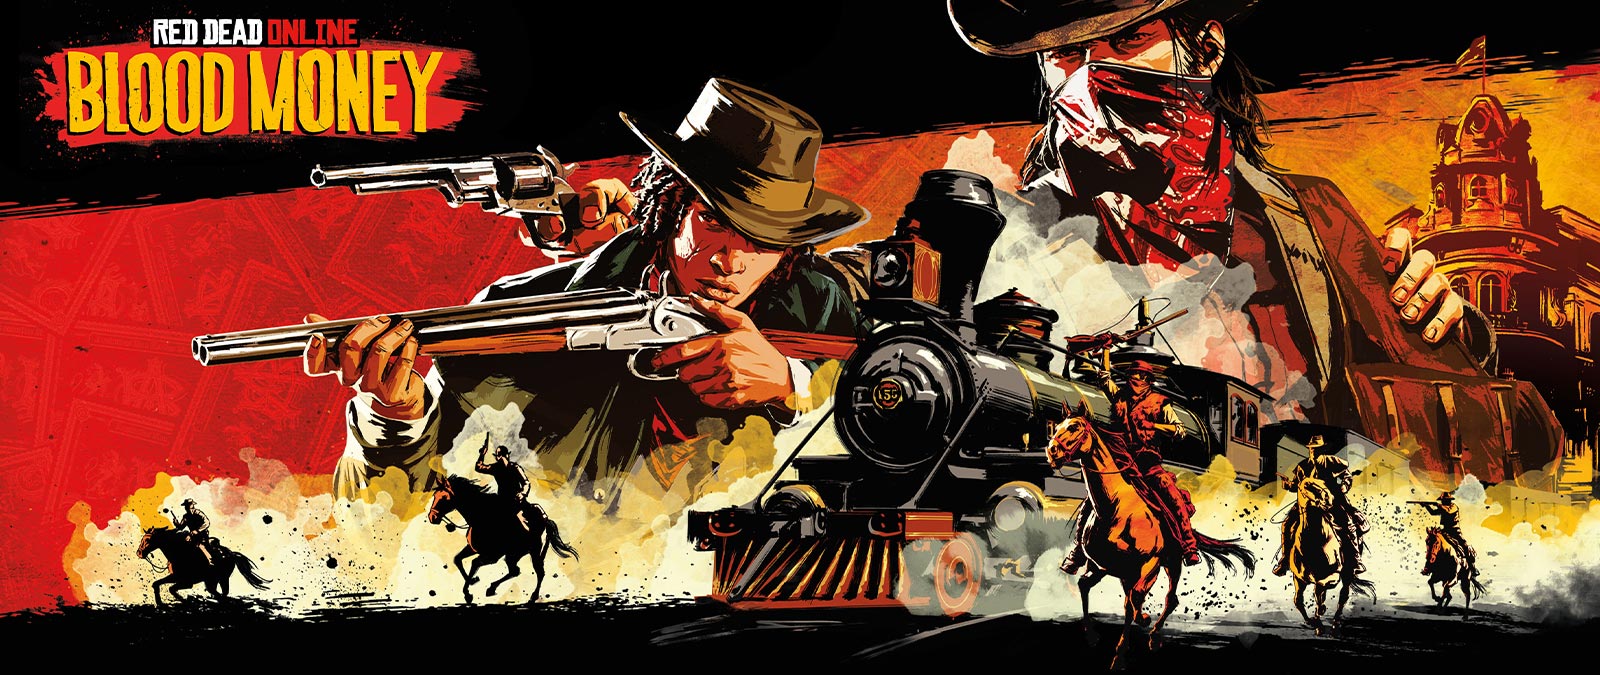 Red Dead Online: Blood Money, bandidos armados a caballo atacan un tren.